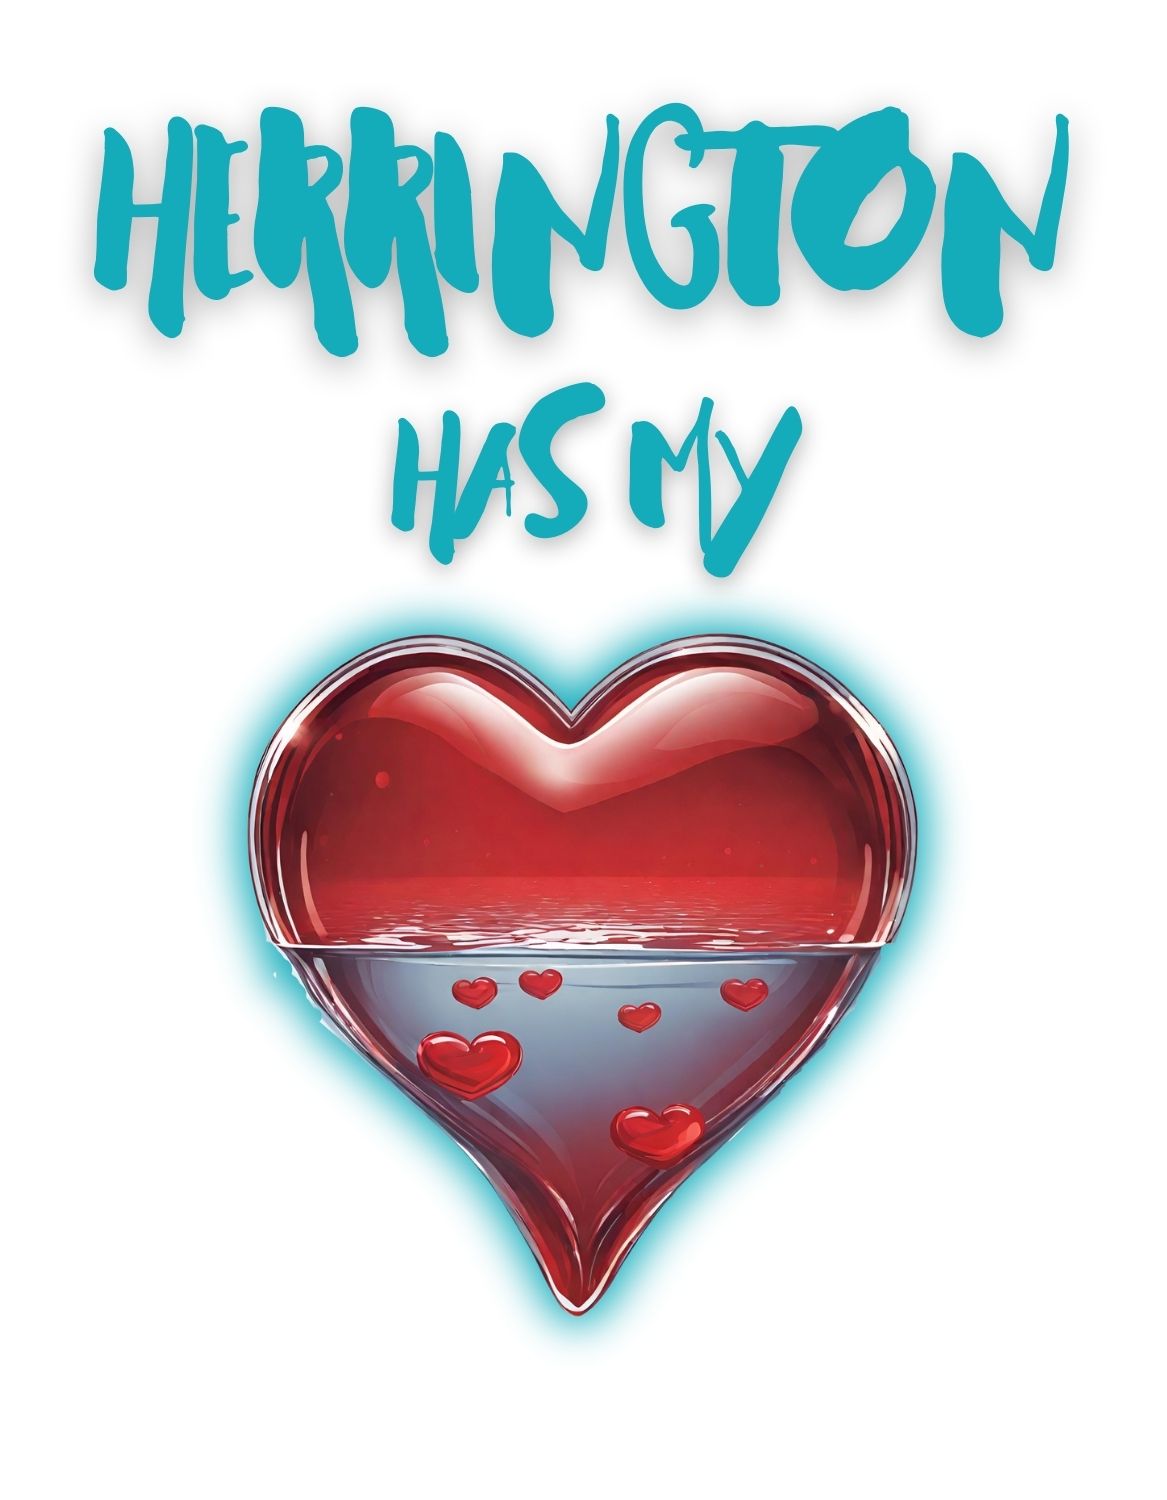 Herrington Has My Heart